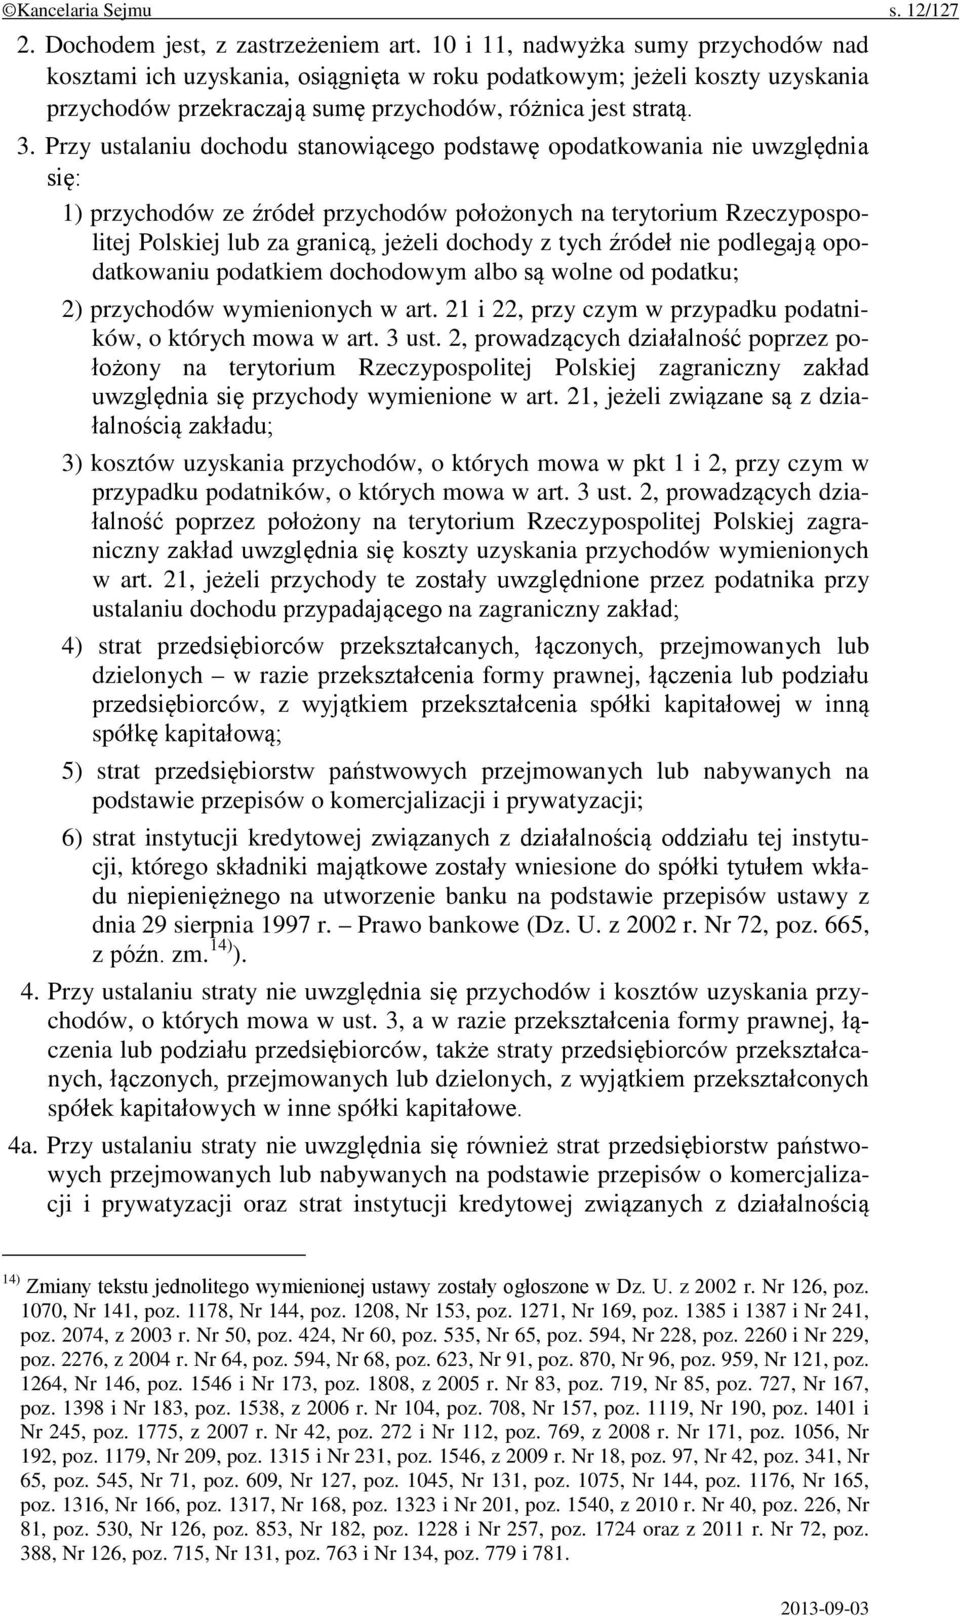 Przy ustalaniu dochodu stanowiącego podstawę opodatkowania nie uwzględnia się: 1) przychodów ze źródeł przychodów położonych na terytorium Rzeczypospolitej Polskiej lub za granicą, jeżeli dochody z